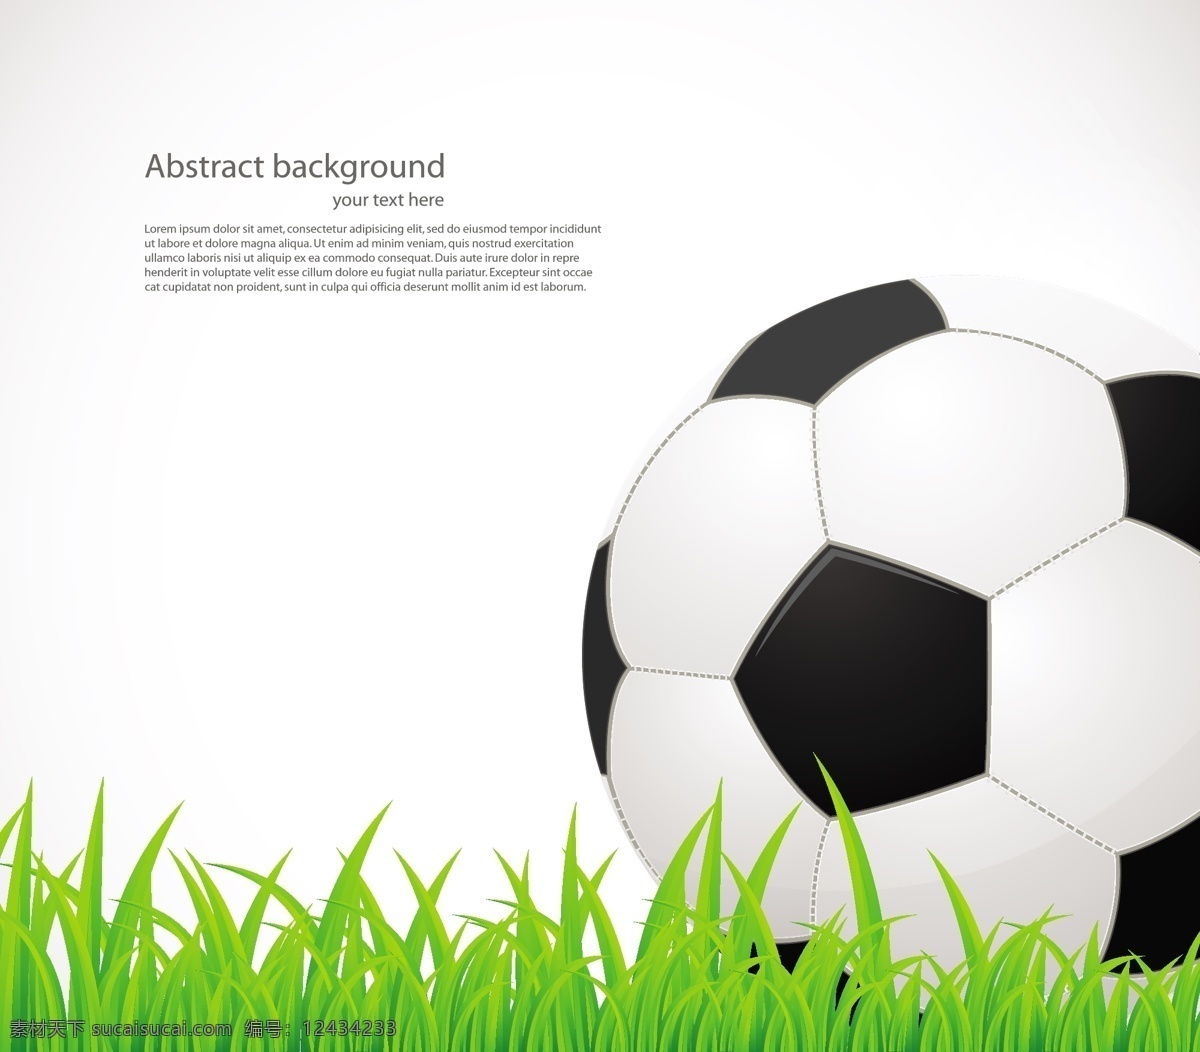 绿色 草坪 上 足球 模板下载 世界杯 巴西 背景 体育运动 生活百科 矢量素材 白色